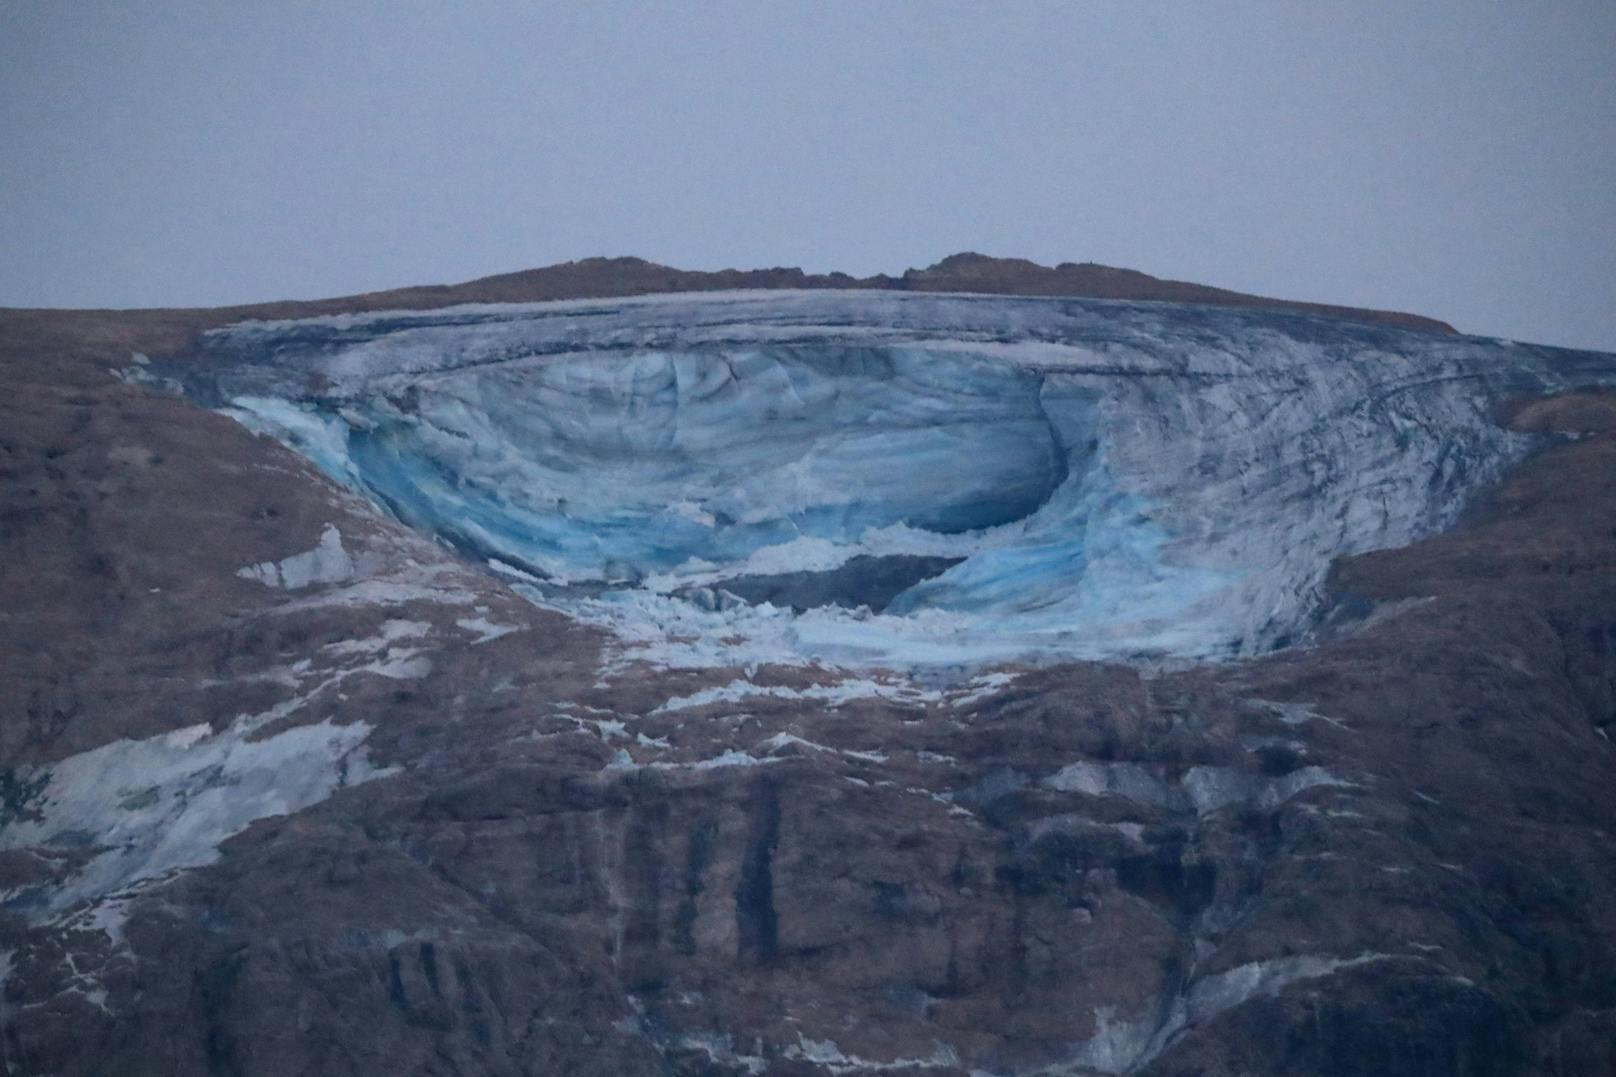 Nach dem Gletschersturz in den Dolomiten, bei dem sich eine Eisplatte gelöst hatte, sind nach wie vor 20 Menschen vermisst. Sechs Todesfälle sind bislang bestätigt.